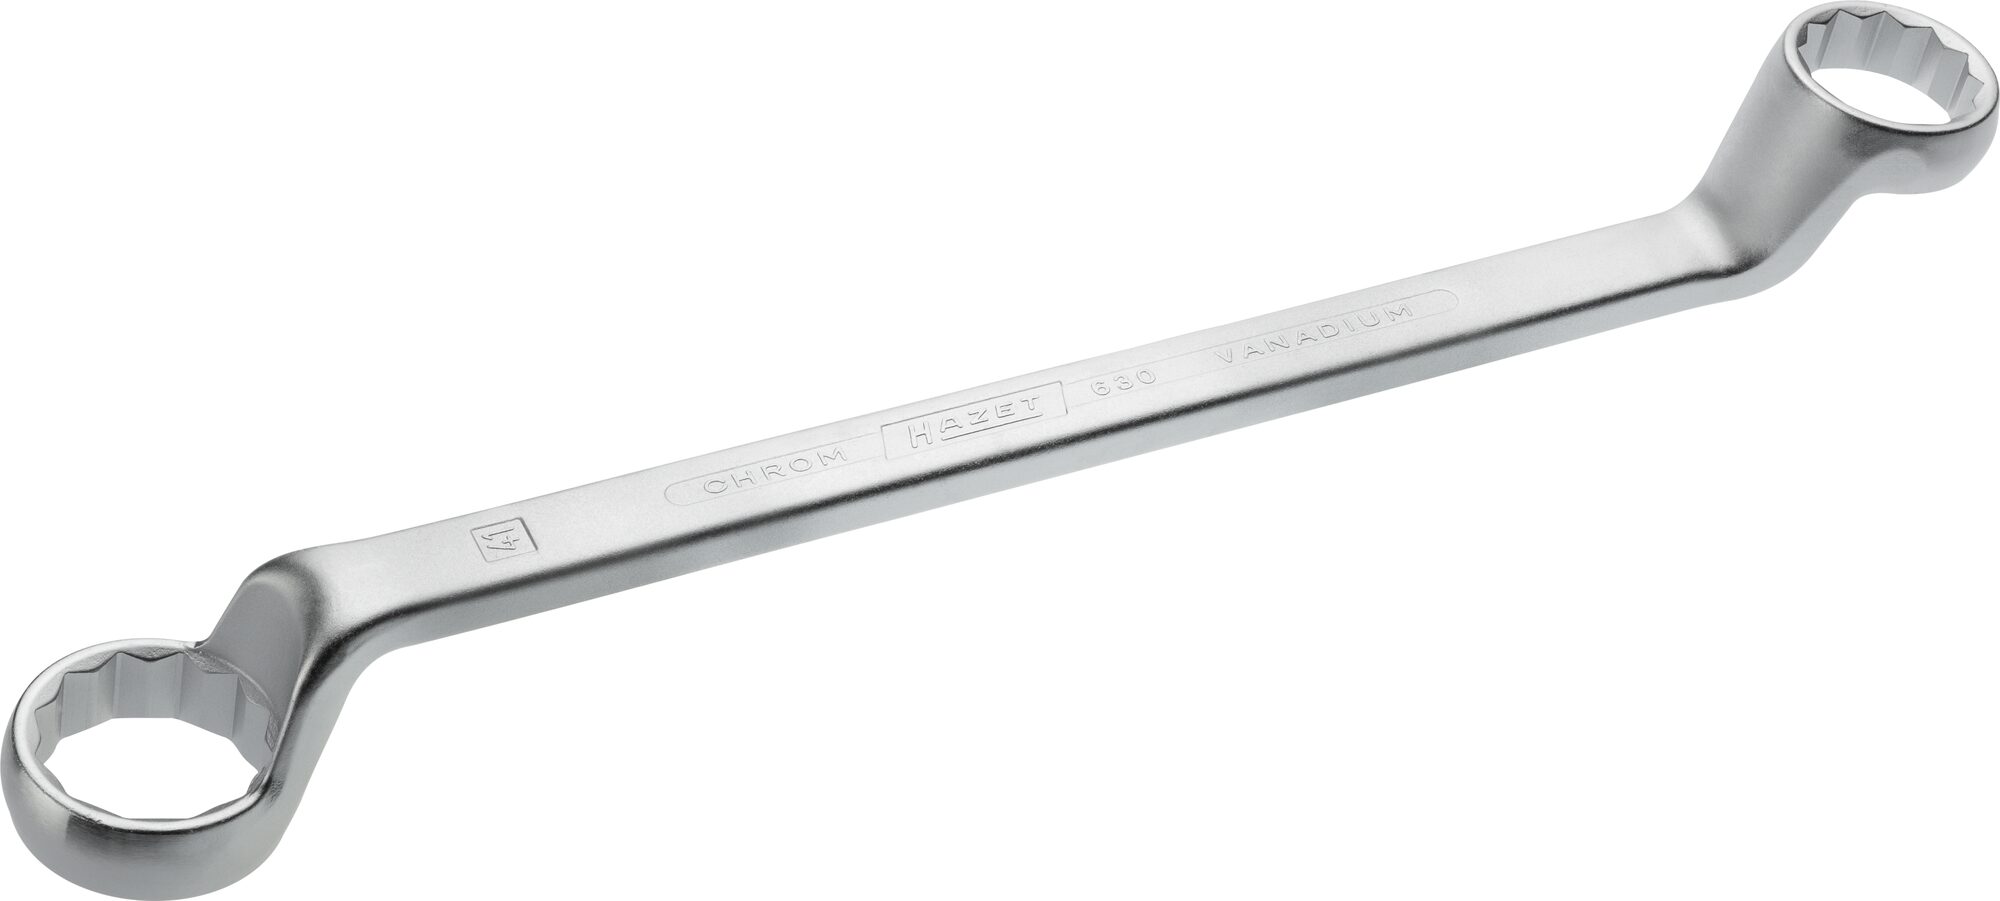 HAZET Doppel-Ringschlüssel 630-36X41 · Außen Doppel-Sechskant Profil · 36 x 41 mm